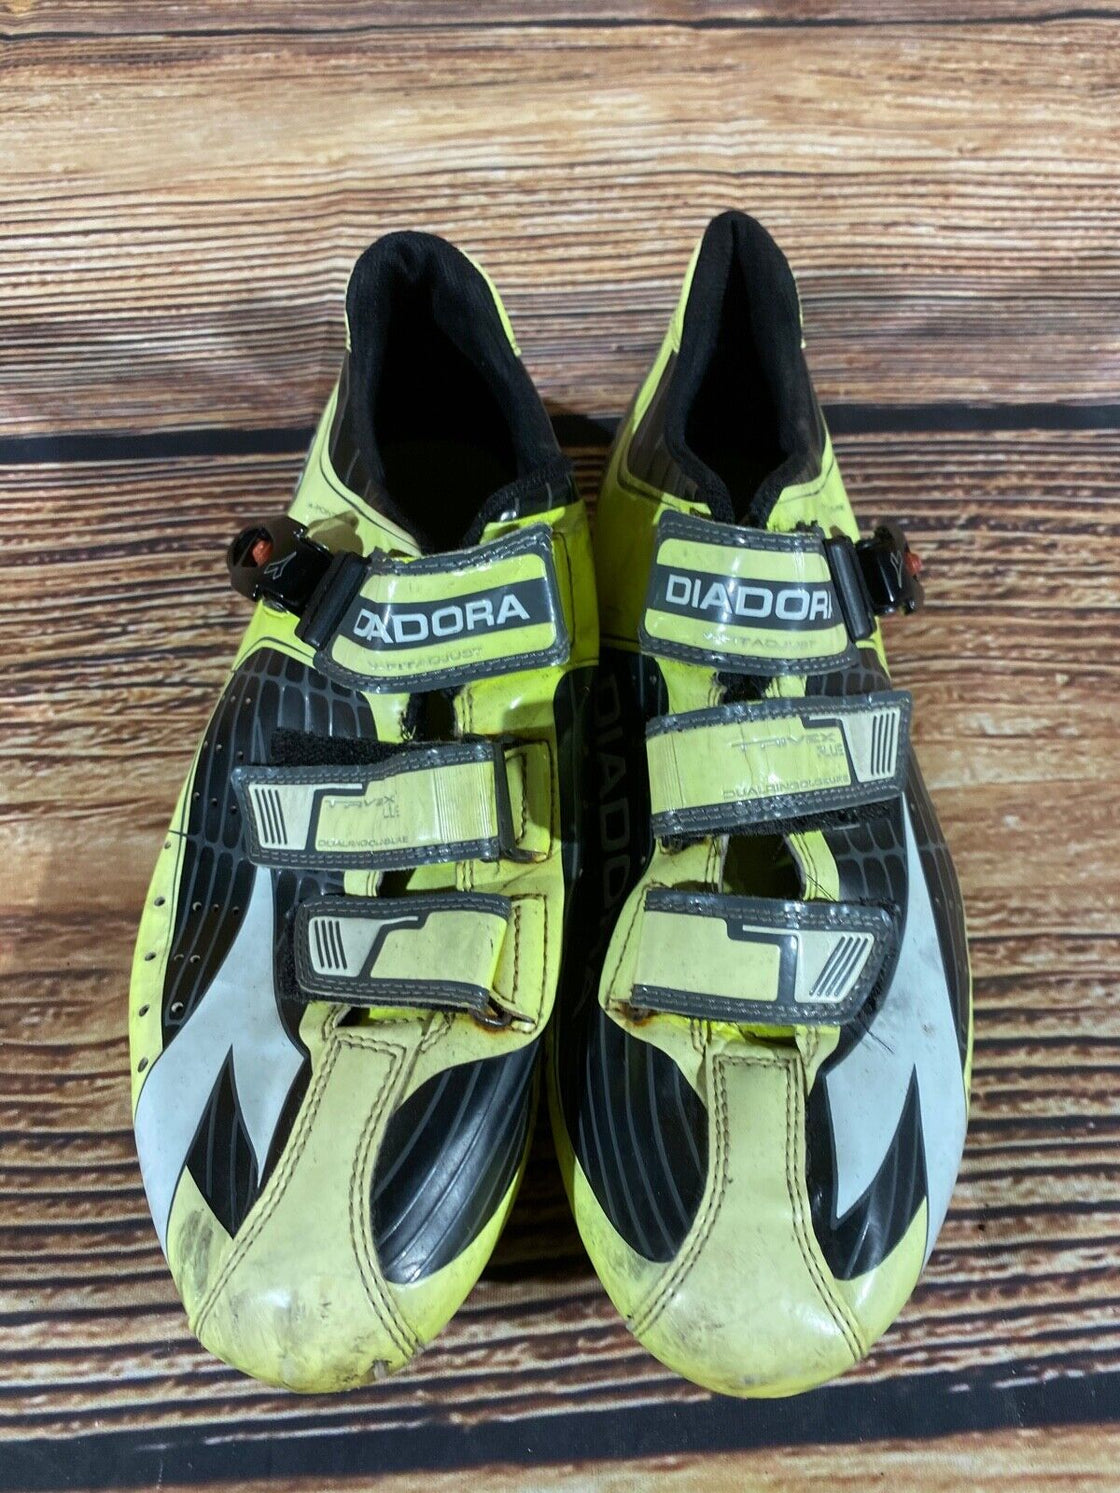 DIADORA Trivex Road Cycling Shoes Biking Boots Shoes Size EU44, US10, Mondo 278